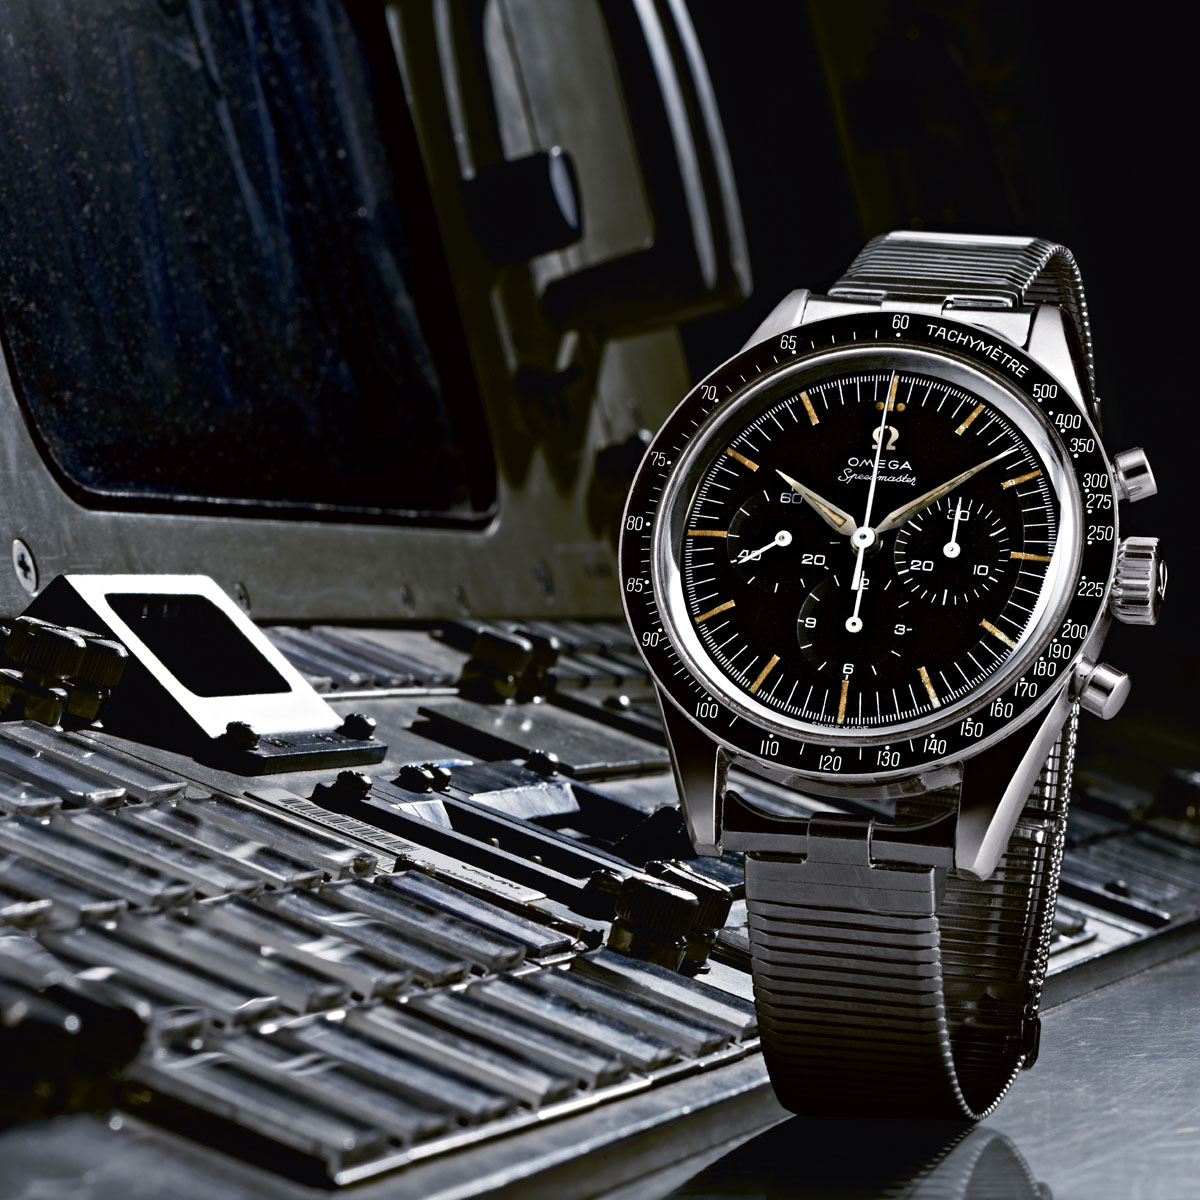 Chiếc đồng hồ bấm giờ Speedmaster được phi hành gia Wally Schirra đeo trong chuyến bay kéo dài 9 giờ 13 phút 11 giây trên tàu vũ trụ Sigma 7